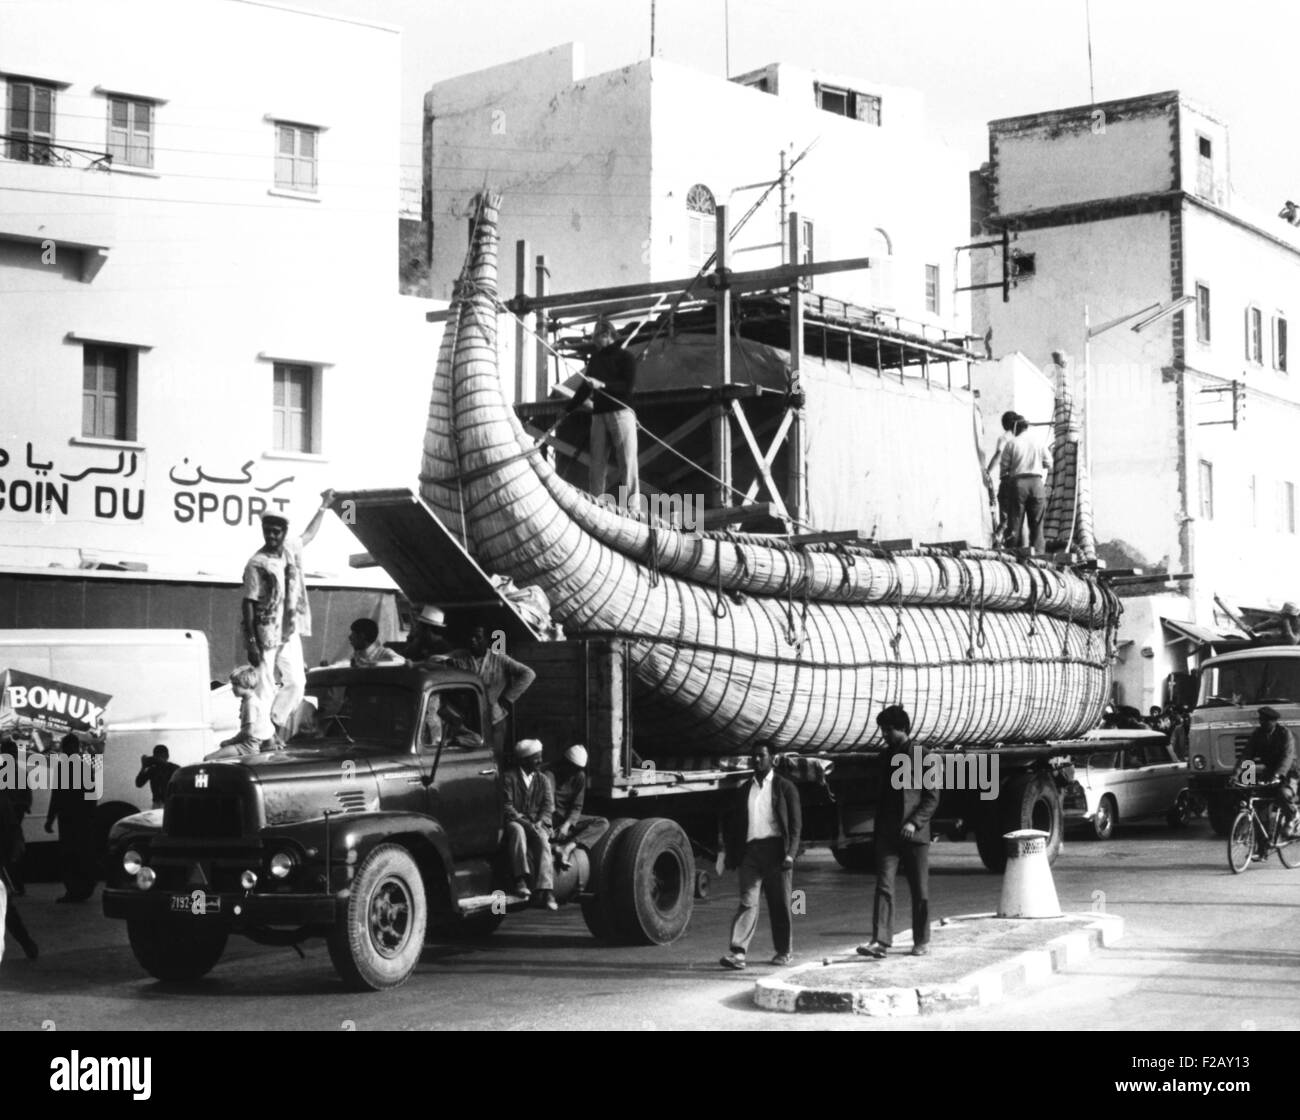 Thor Heyerdahls zweite Papyrus Reed Boot, die "RA II" wird in Hafen von Safi in Marokko gebracht. "RA II" segelte von Safi Hafen am 17. Mai 1970 und Barbados in 57 Tagen erreicht. (CSU 2015 9 947) Stockfoto